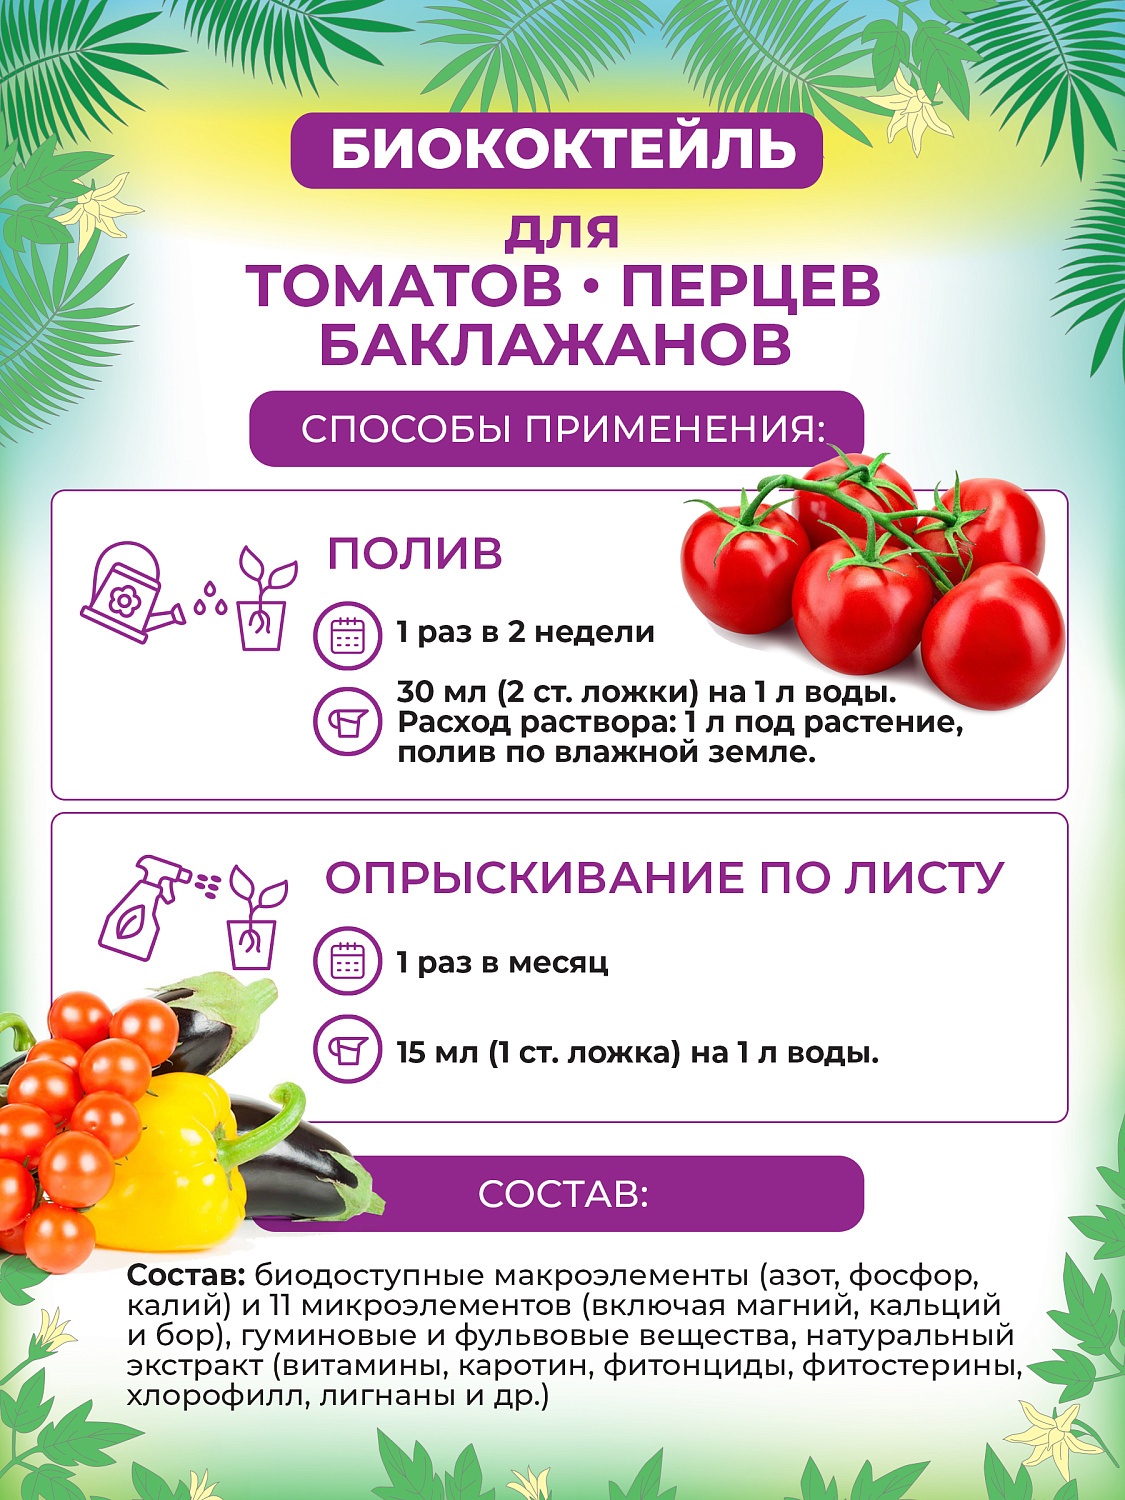 БИОкоктейль для томатов, перцев, баклажанов ТМ БИОША